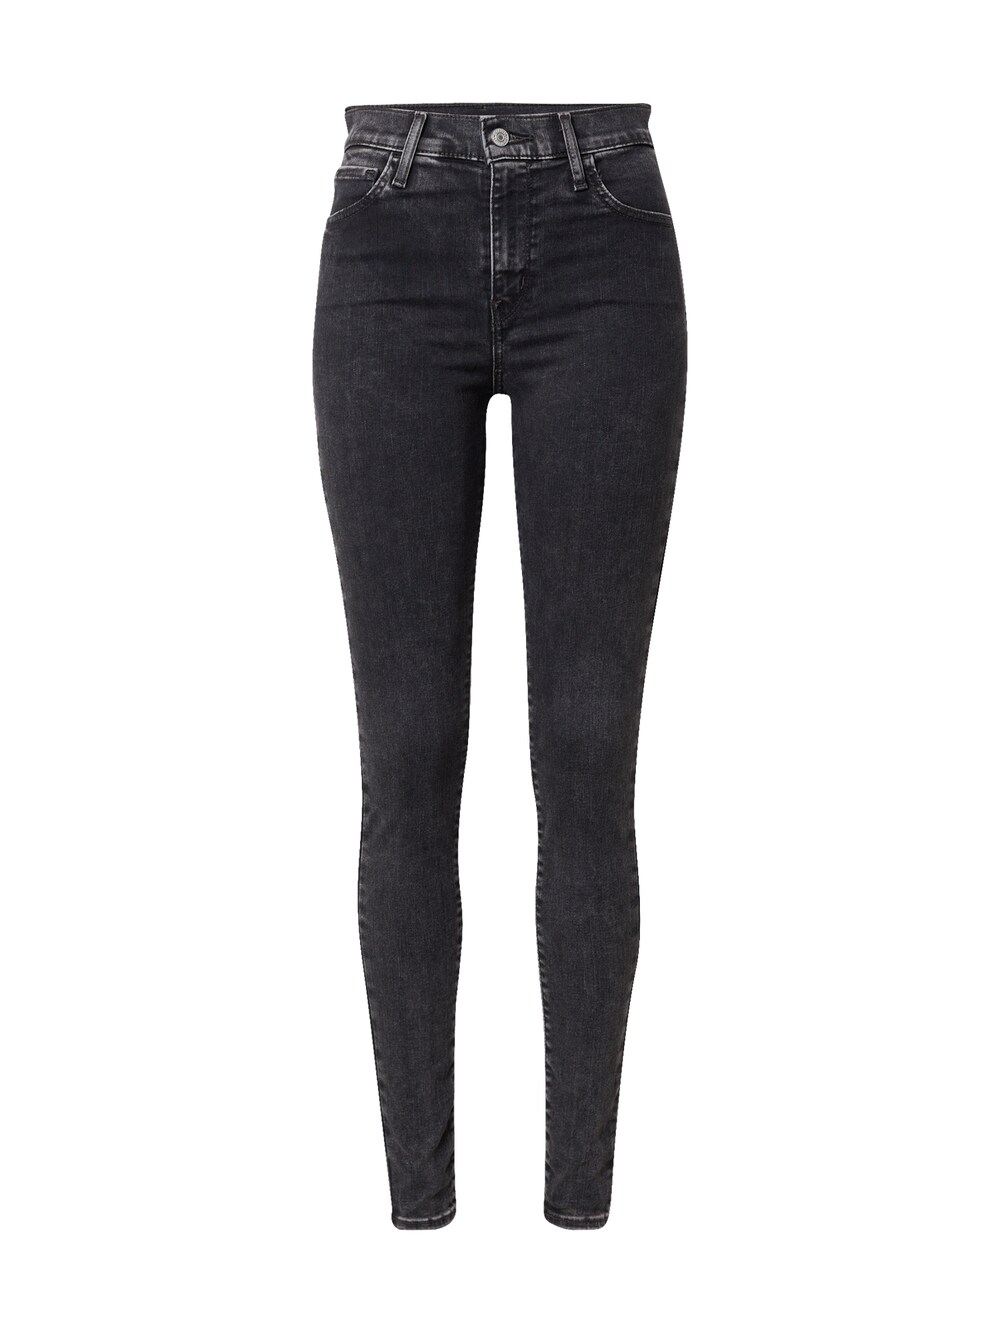 Узкие джинсы LEVIS 720 HIRISE SUPER SKINNY BLACKS, черный